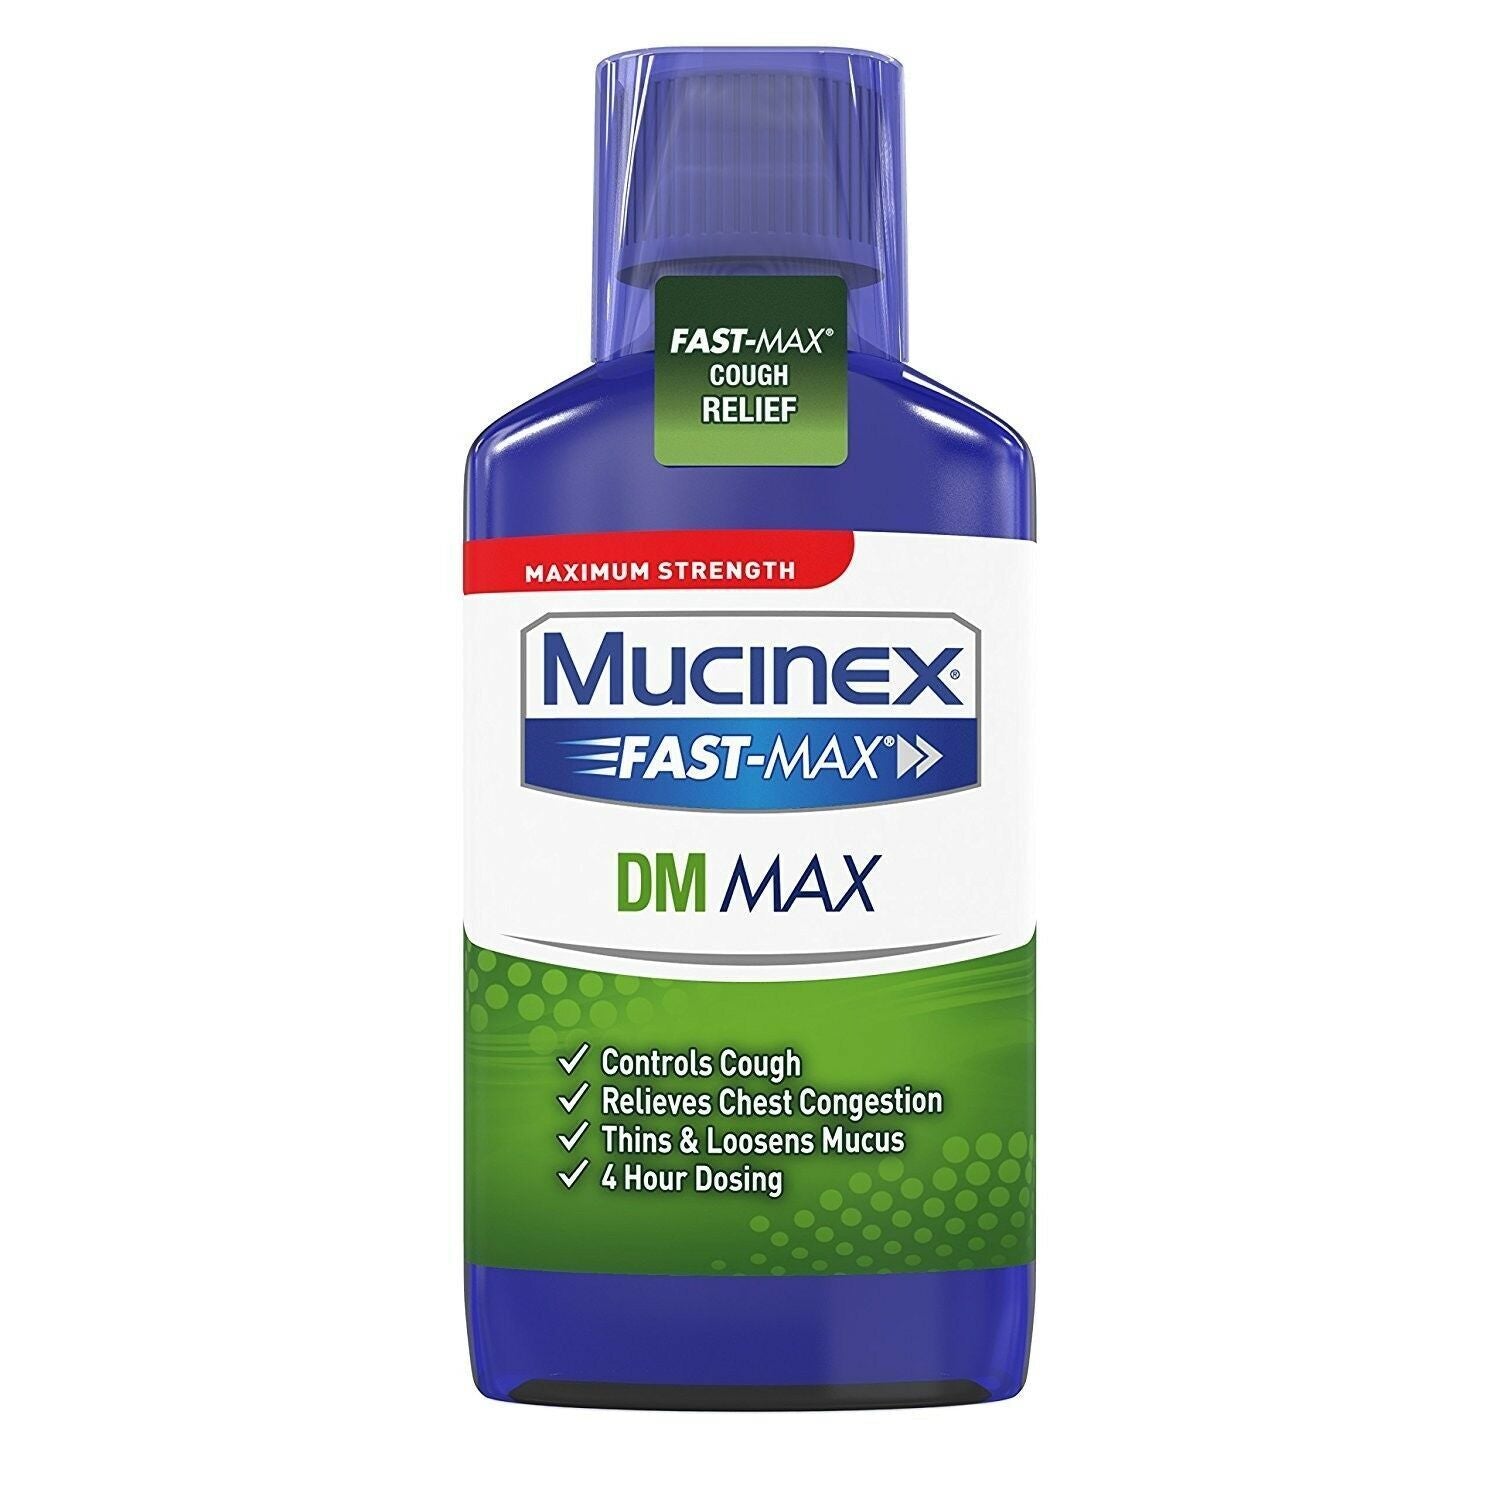 Mucinex Fast-Max DM Maximum Strength Cough Suppressant Expectorant Liquid 6 Oz